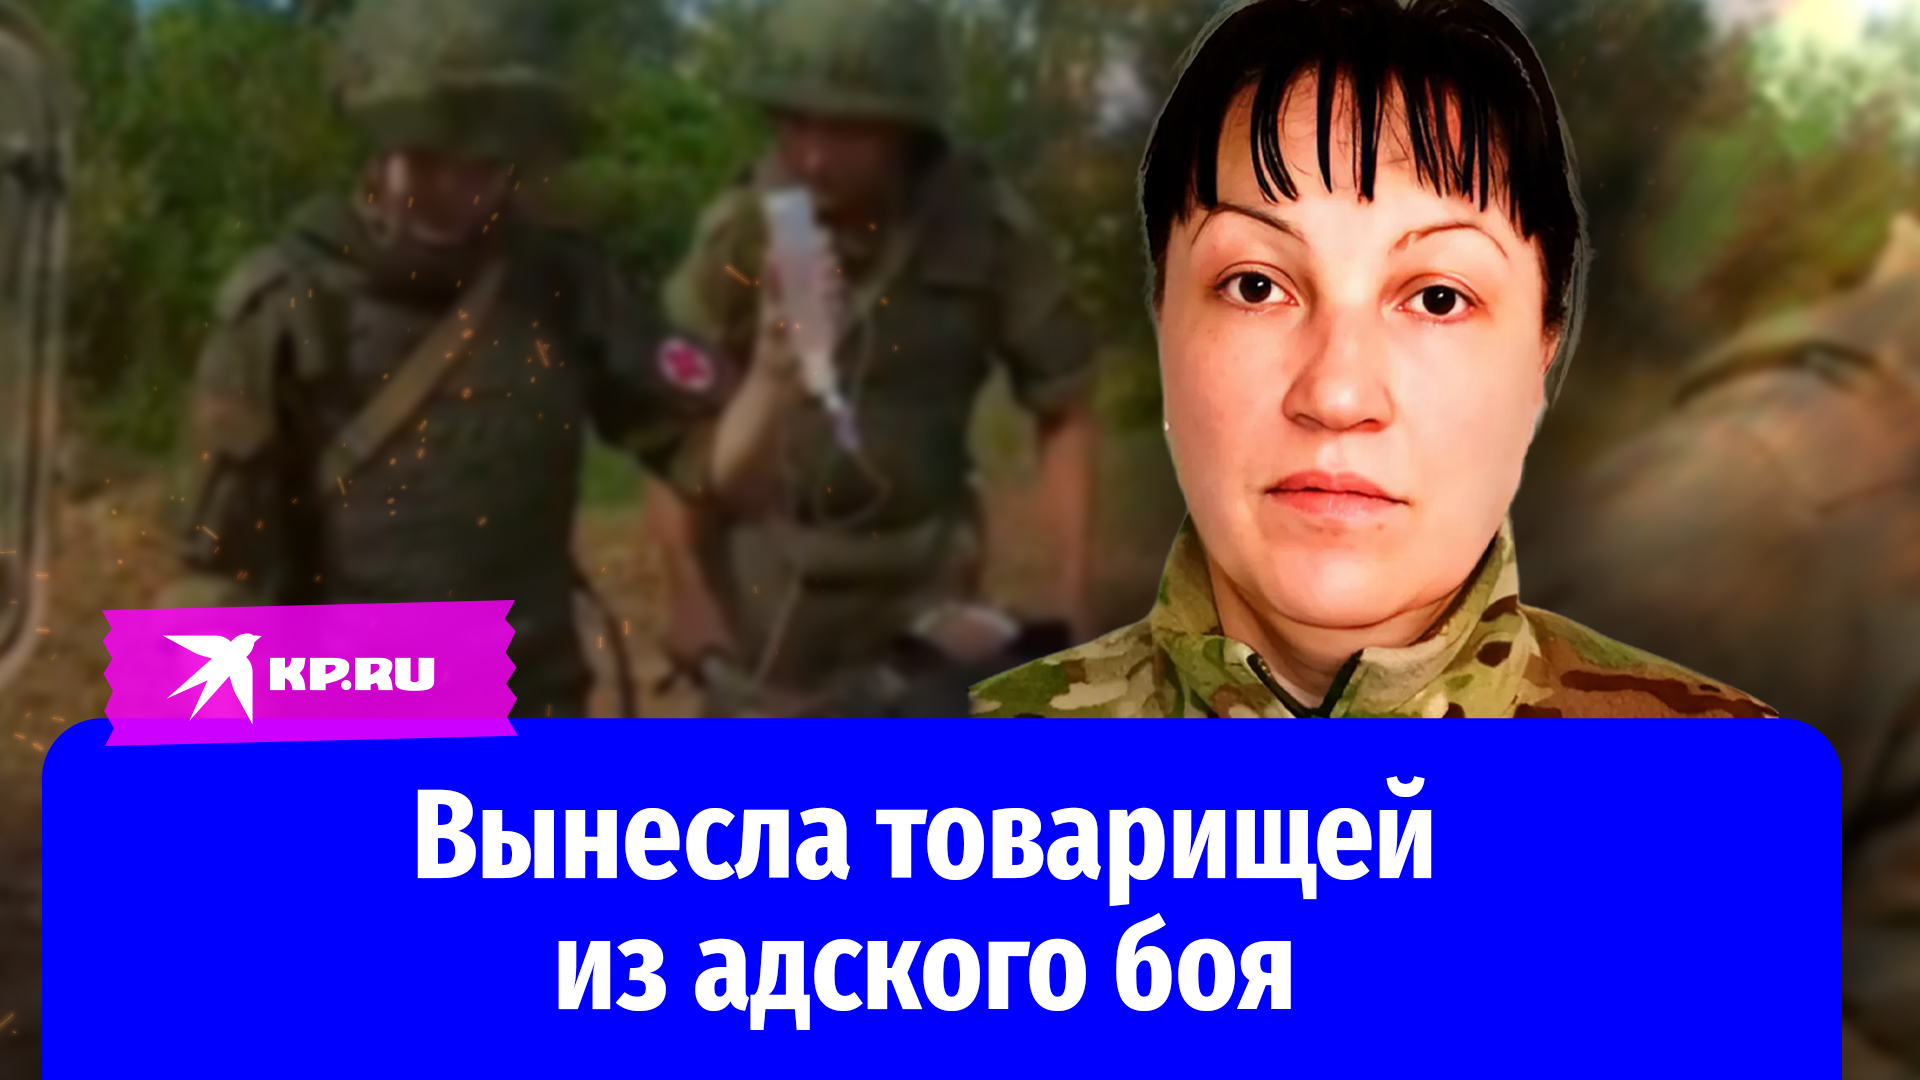 Старший сержант Наталья Алексеева вынесла товарищей из адского боя